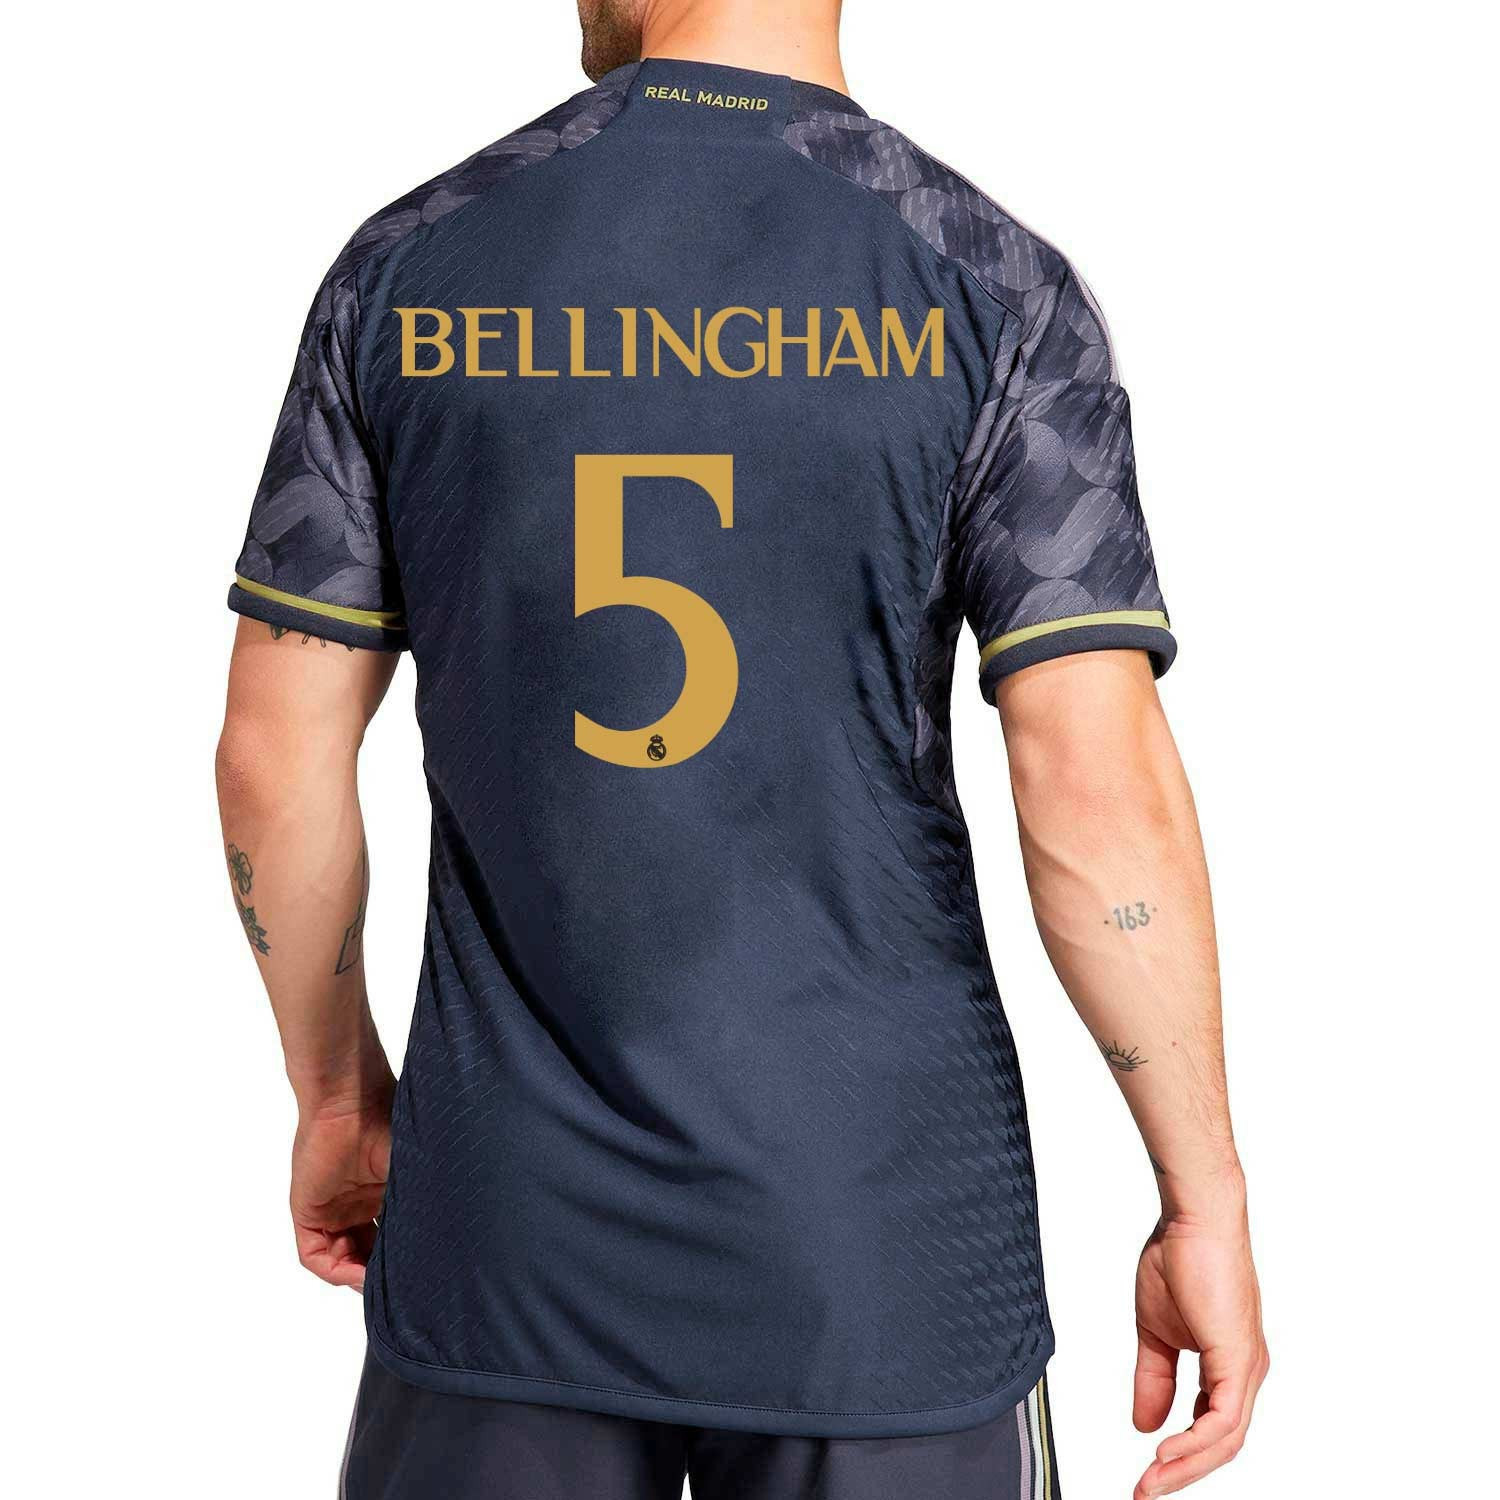 adidas Camiseta Real Madrid Bellingham 5 Visitante 2023-2024